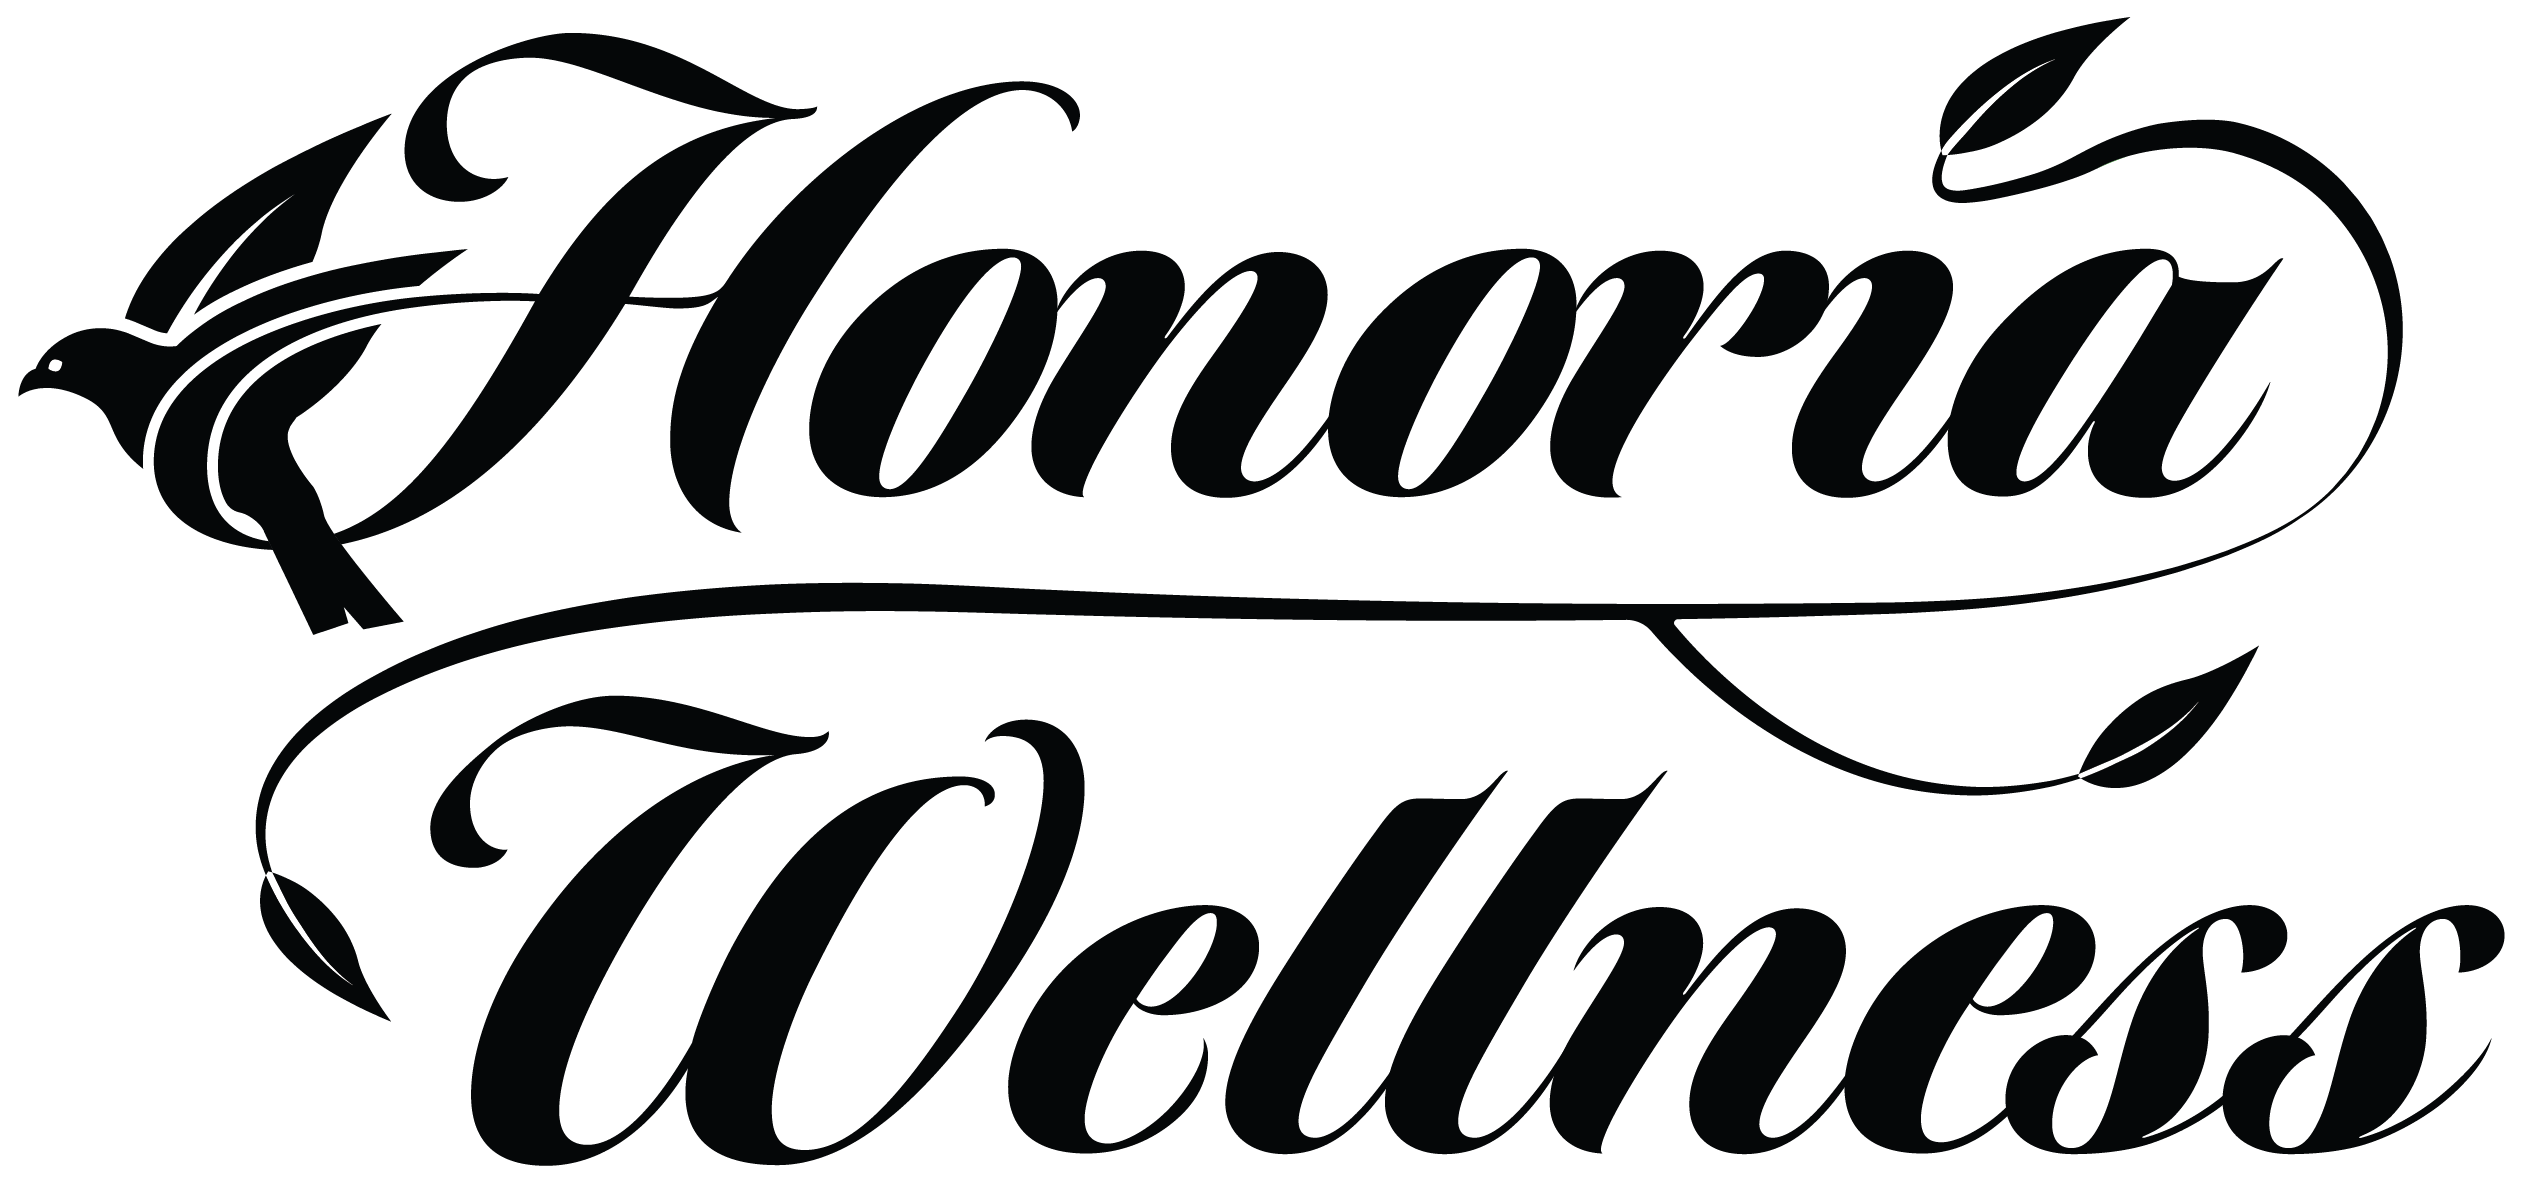 Proposed Logo Version 1